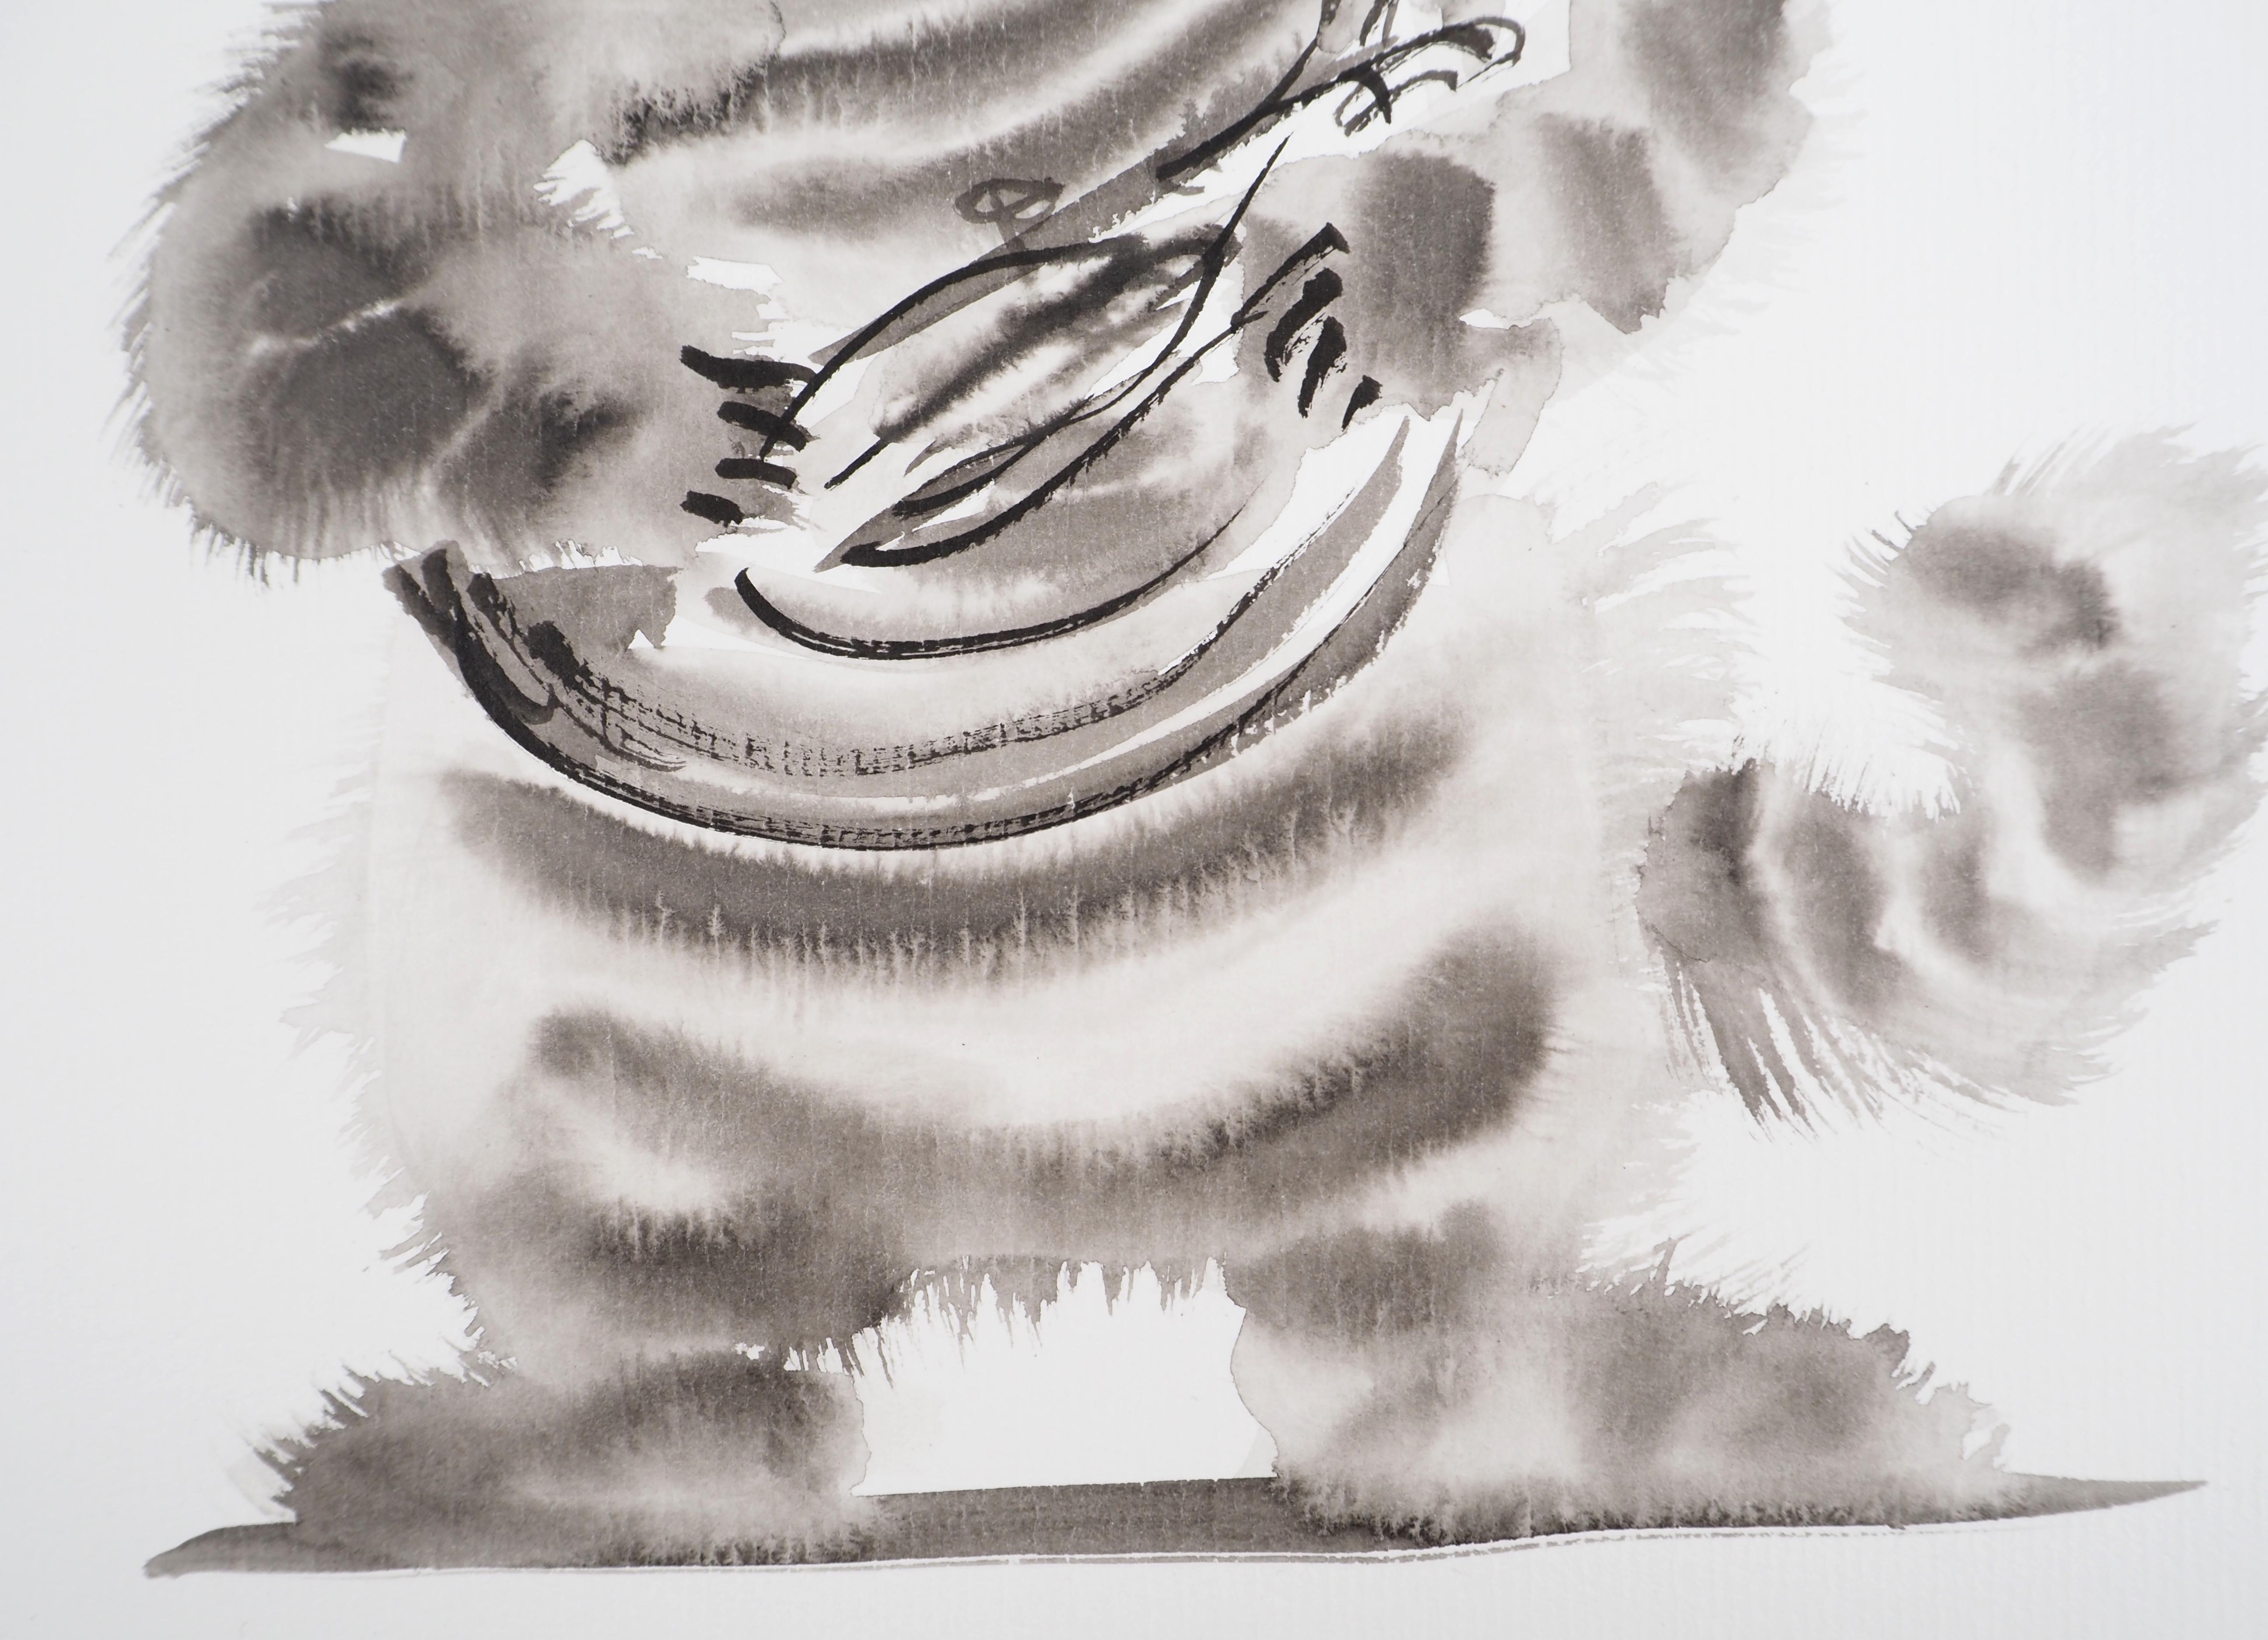 Laszlo TIBAY
Le musicien : Drôle de chat gris

Dessin original à l'encre de Chine et somptueux
Signé de la main
Portant le cachet de l'artiste
Sur carton léger 20 x 25cm (c. 7.8 x 9.8 inch)

Excellent état 